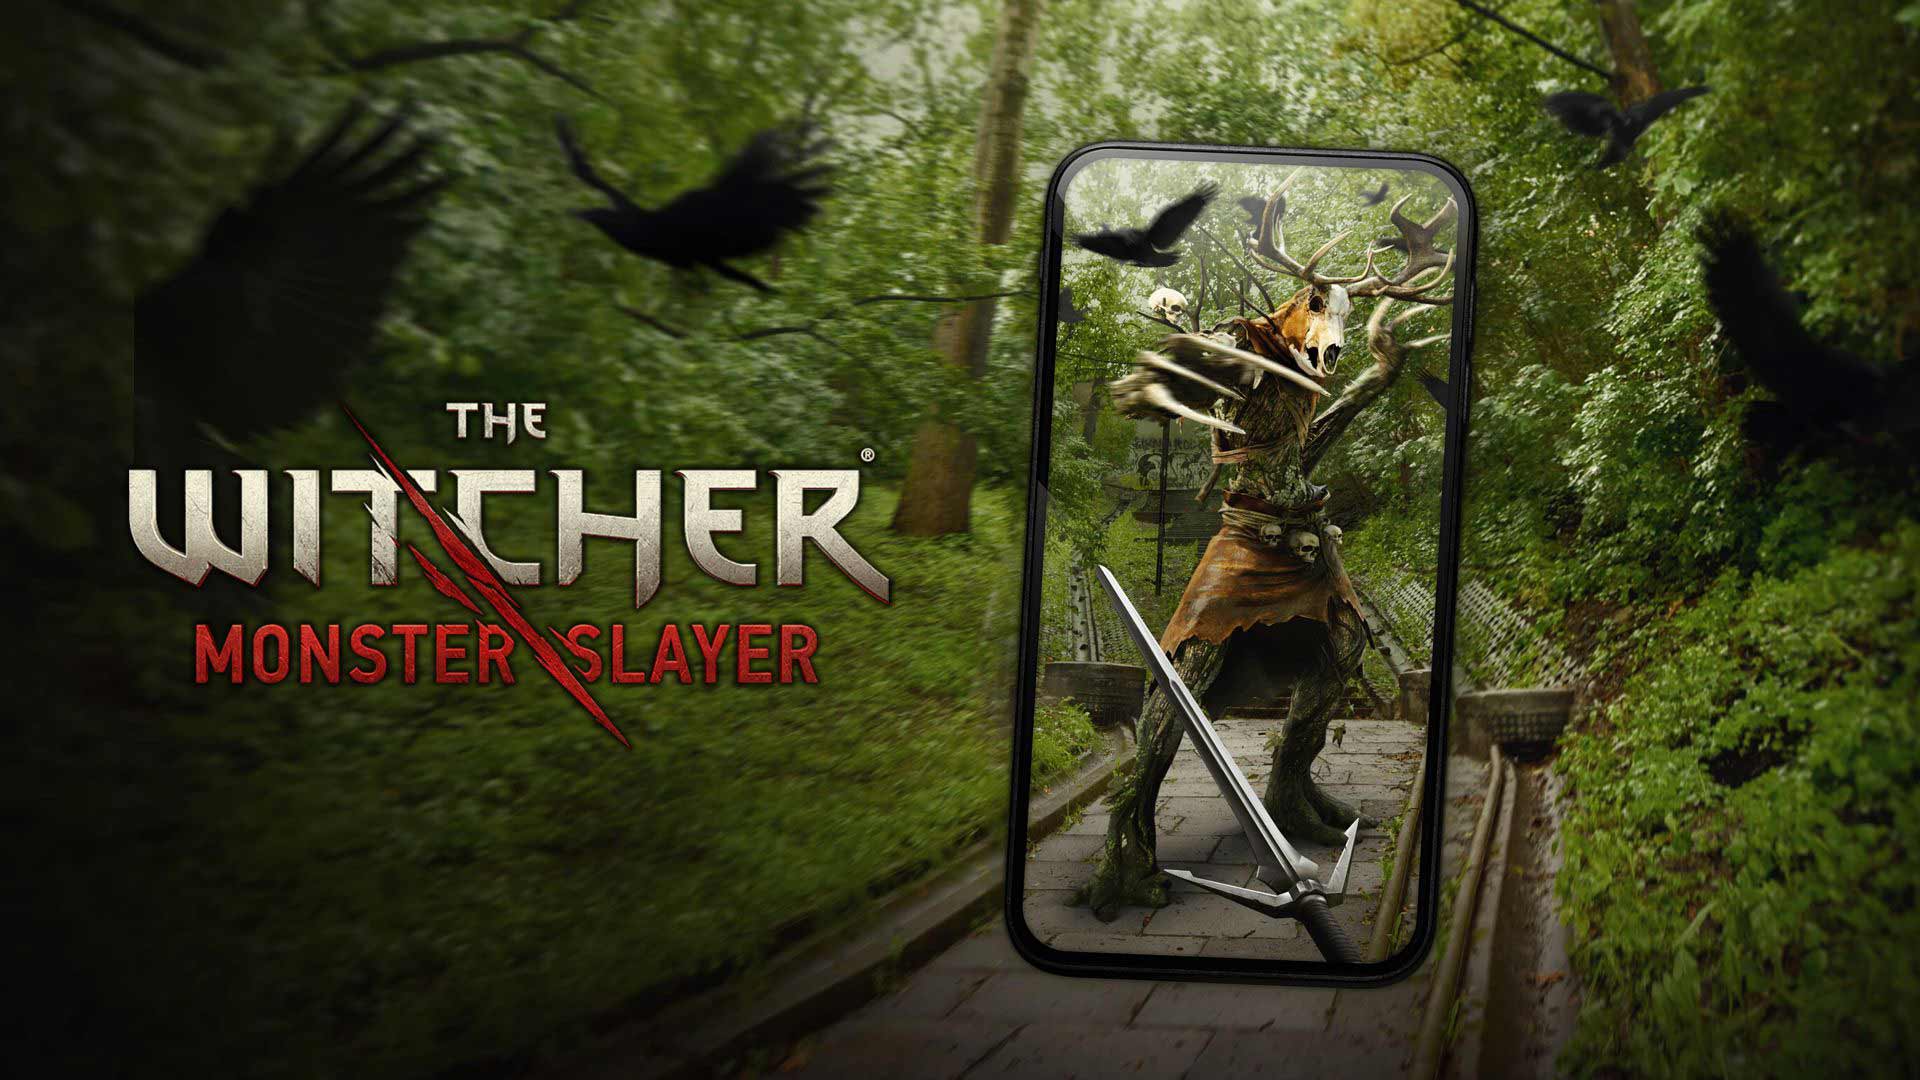 معرفی بازی موبایل The Witcher: Monster Slayer؛ دنیای ویچر در واقیعت افزوده